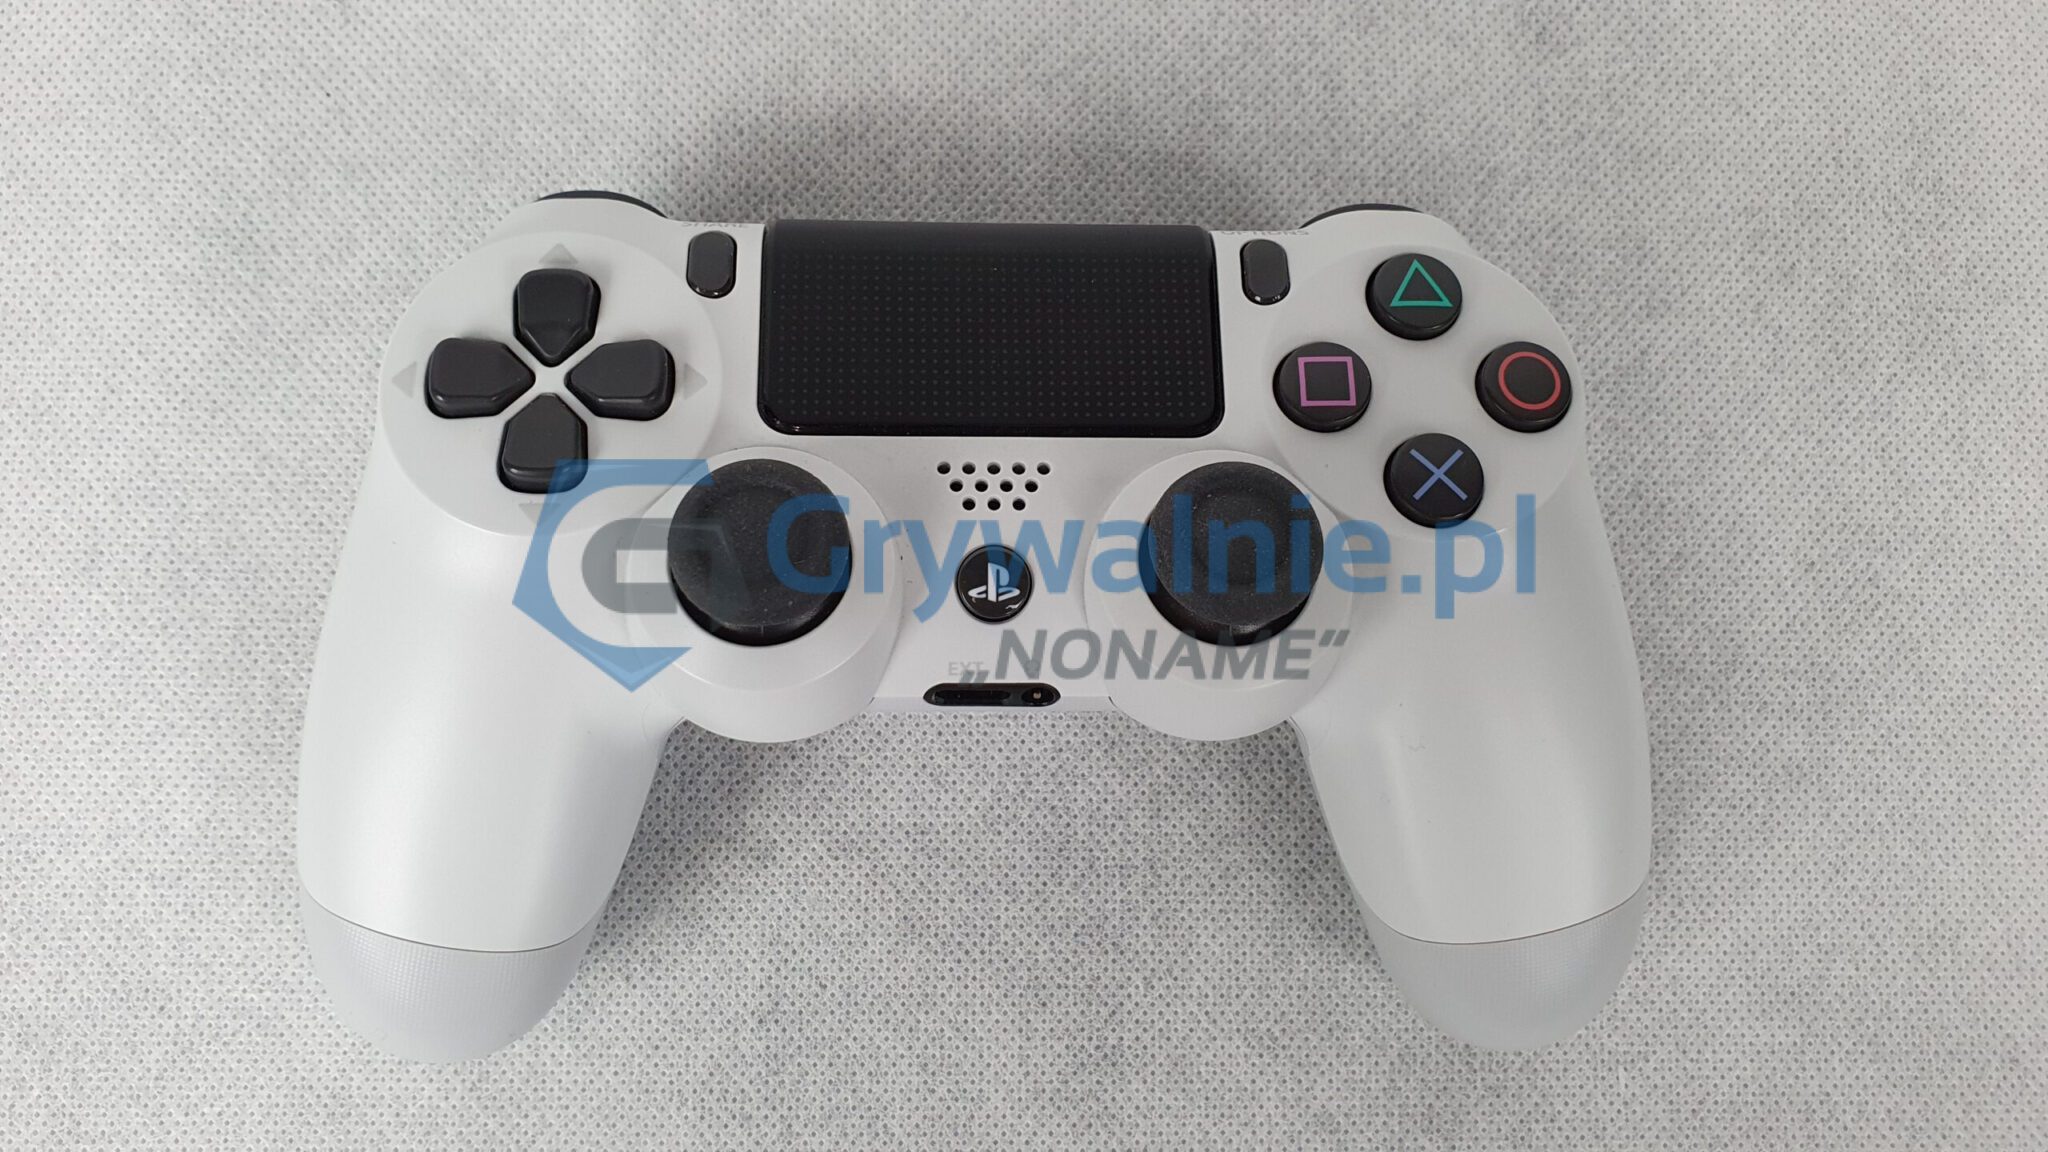 PlayStation porównanie kontrolerów - PS5, PS4, PS3 (DualShock 3, DualShock 4, DualSense)